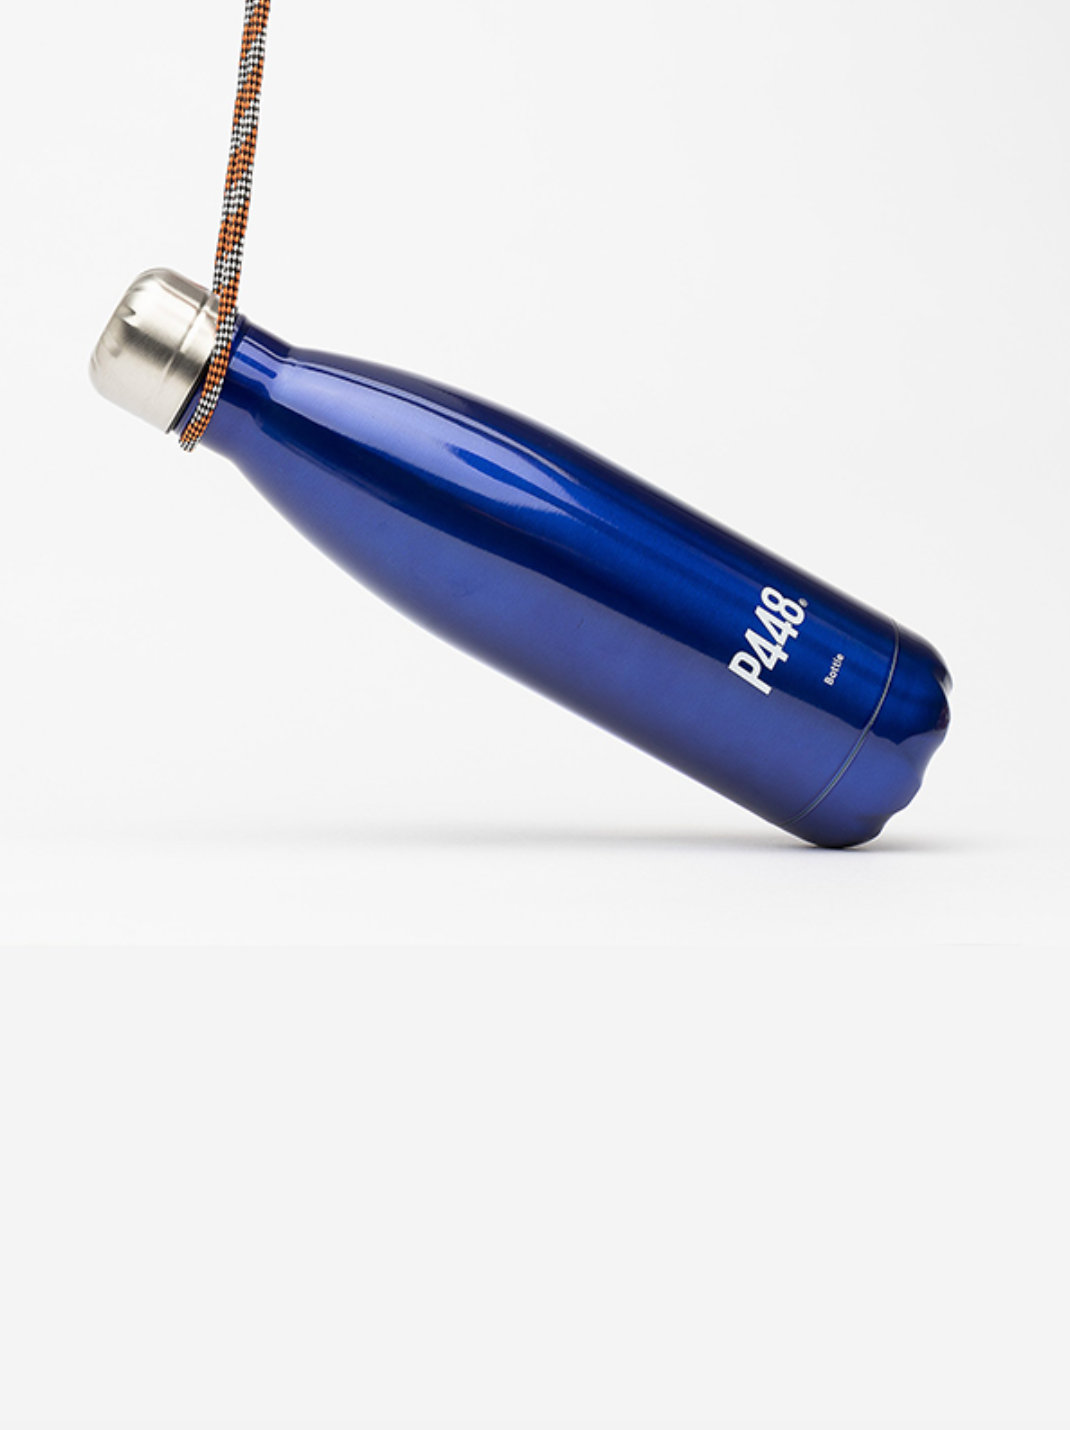 P448環保水瓶